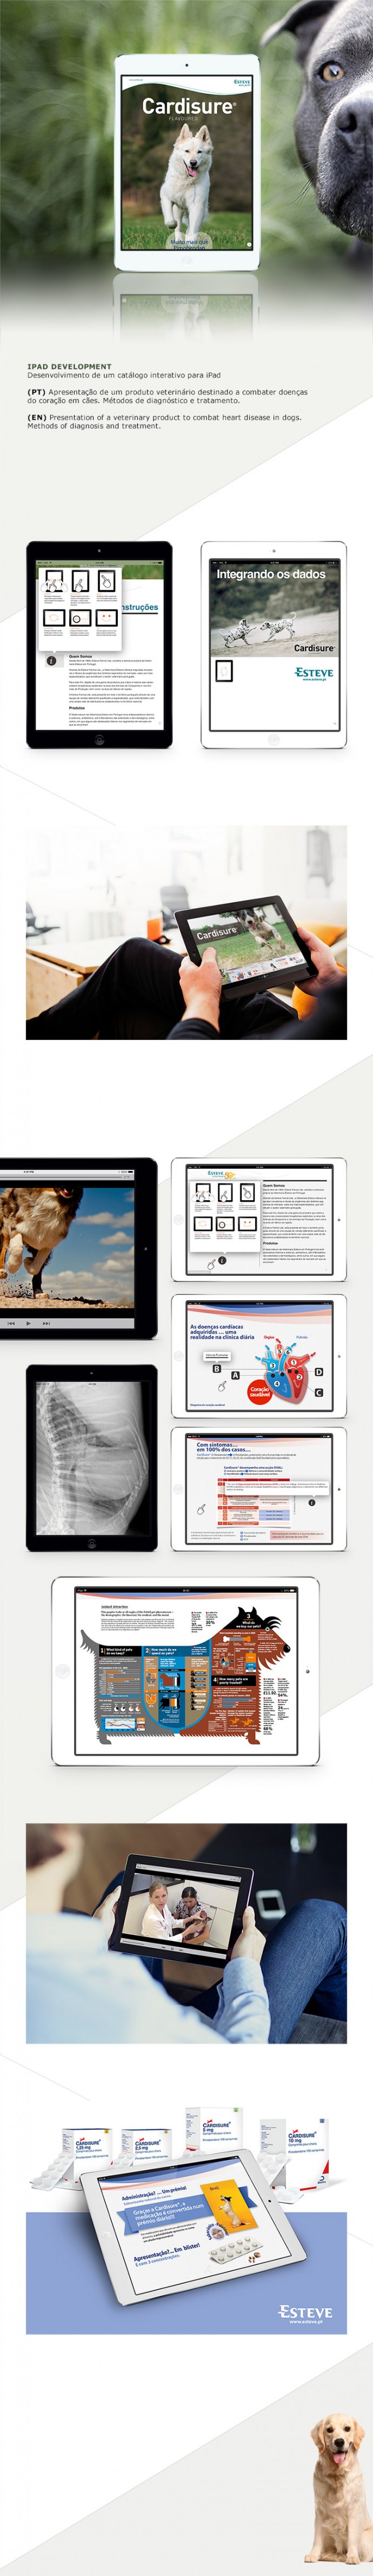 Desenvolvimento de uma aplicação para o iPad (Apple iOS) a cargo da empresa farmacêutica Esteve Pharma. Aplicação do medicamento veterinário Cardisure